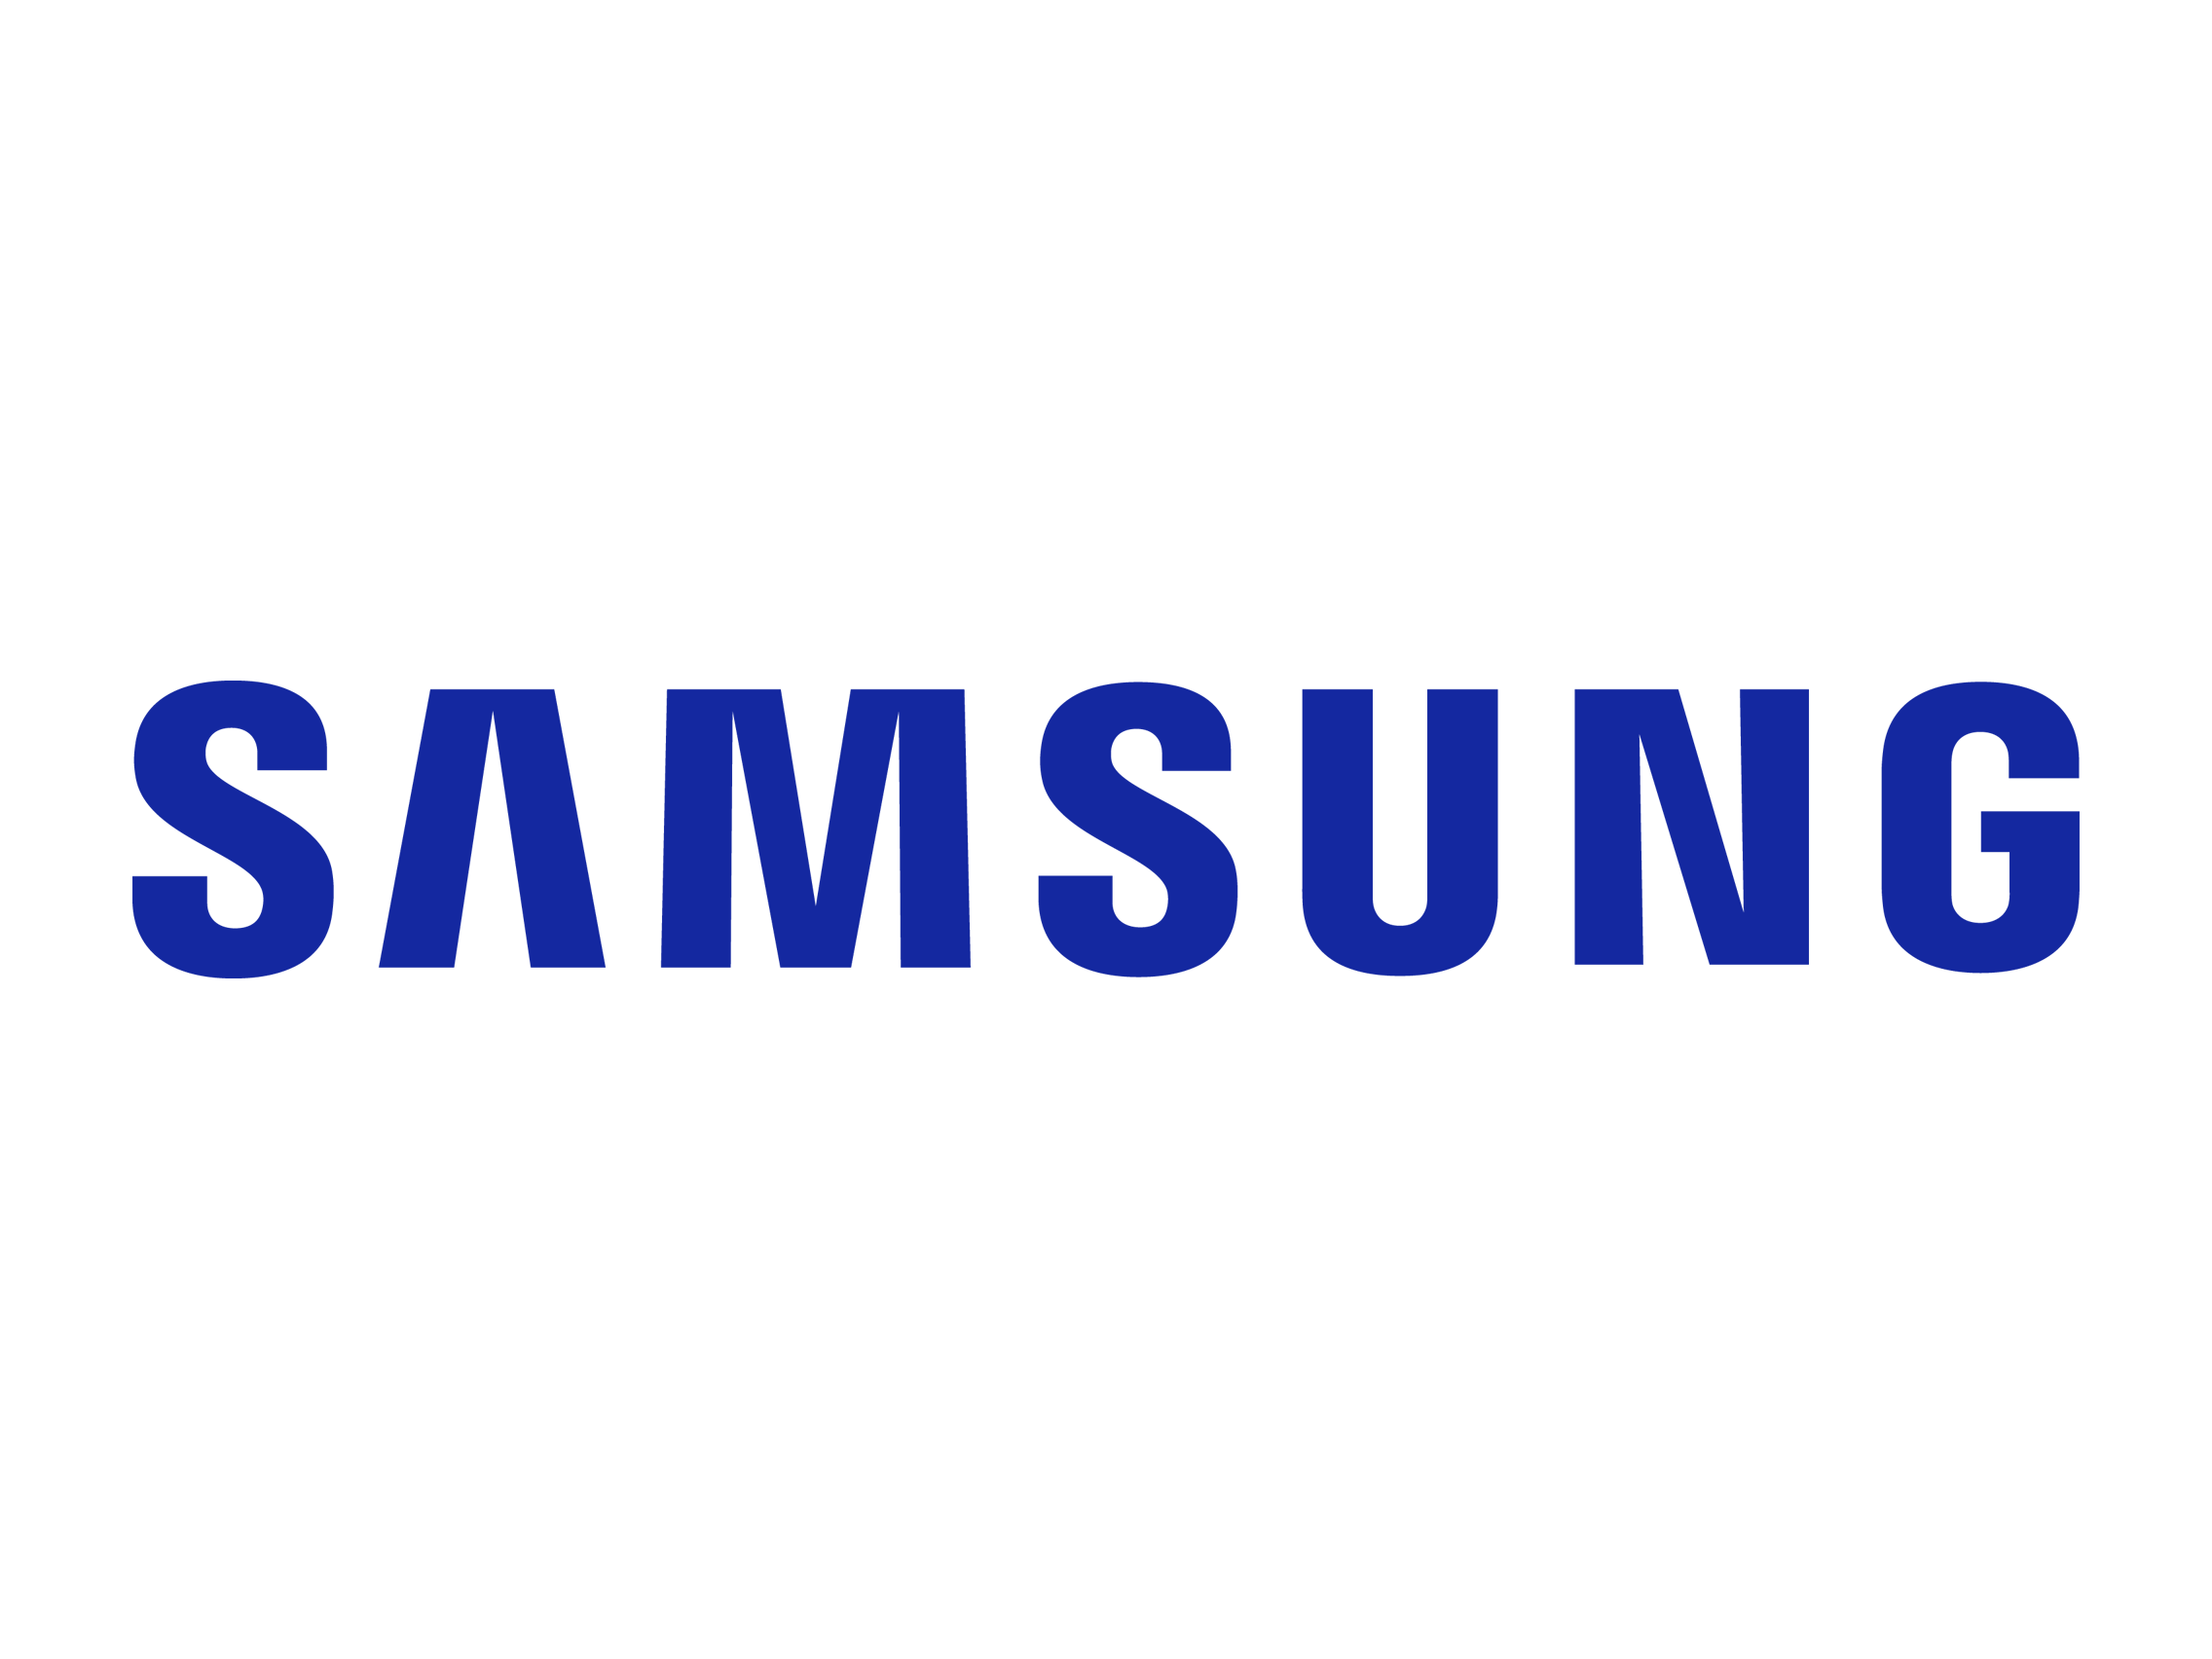 Блок проявки Samsung оригинал для Samsung SL-X7400/7500/7600, черный (JC96-12520A)